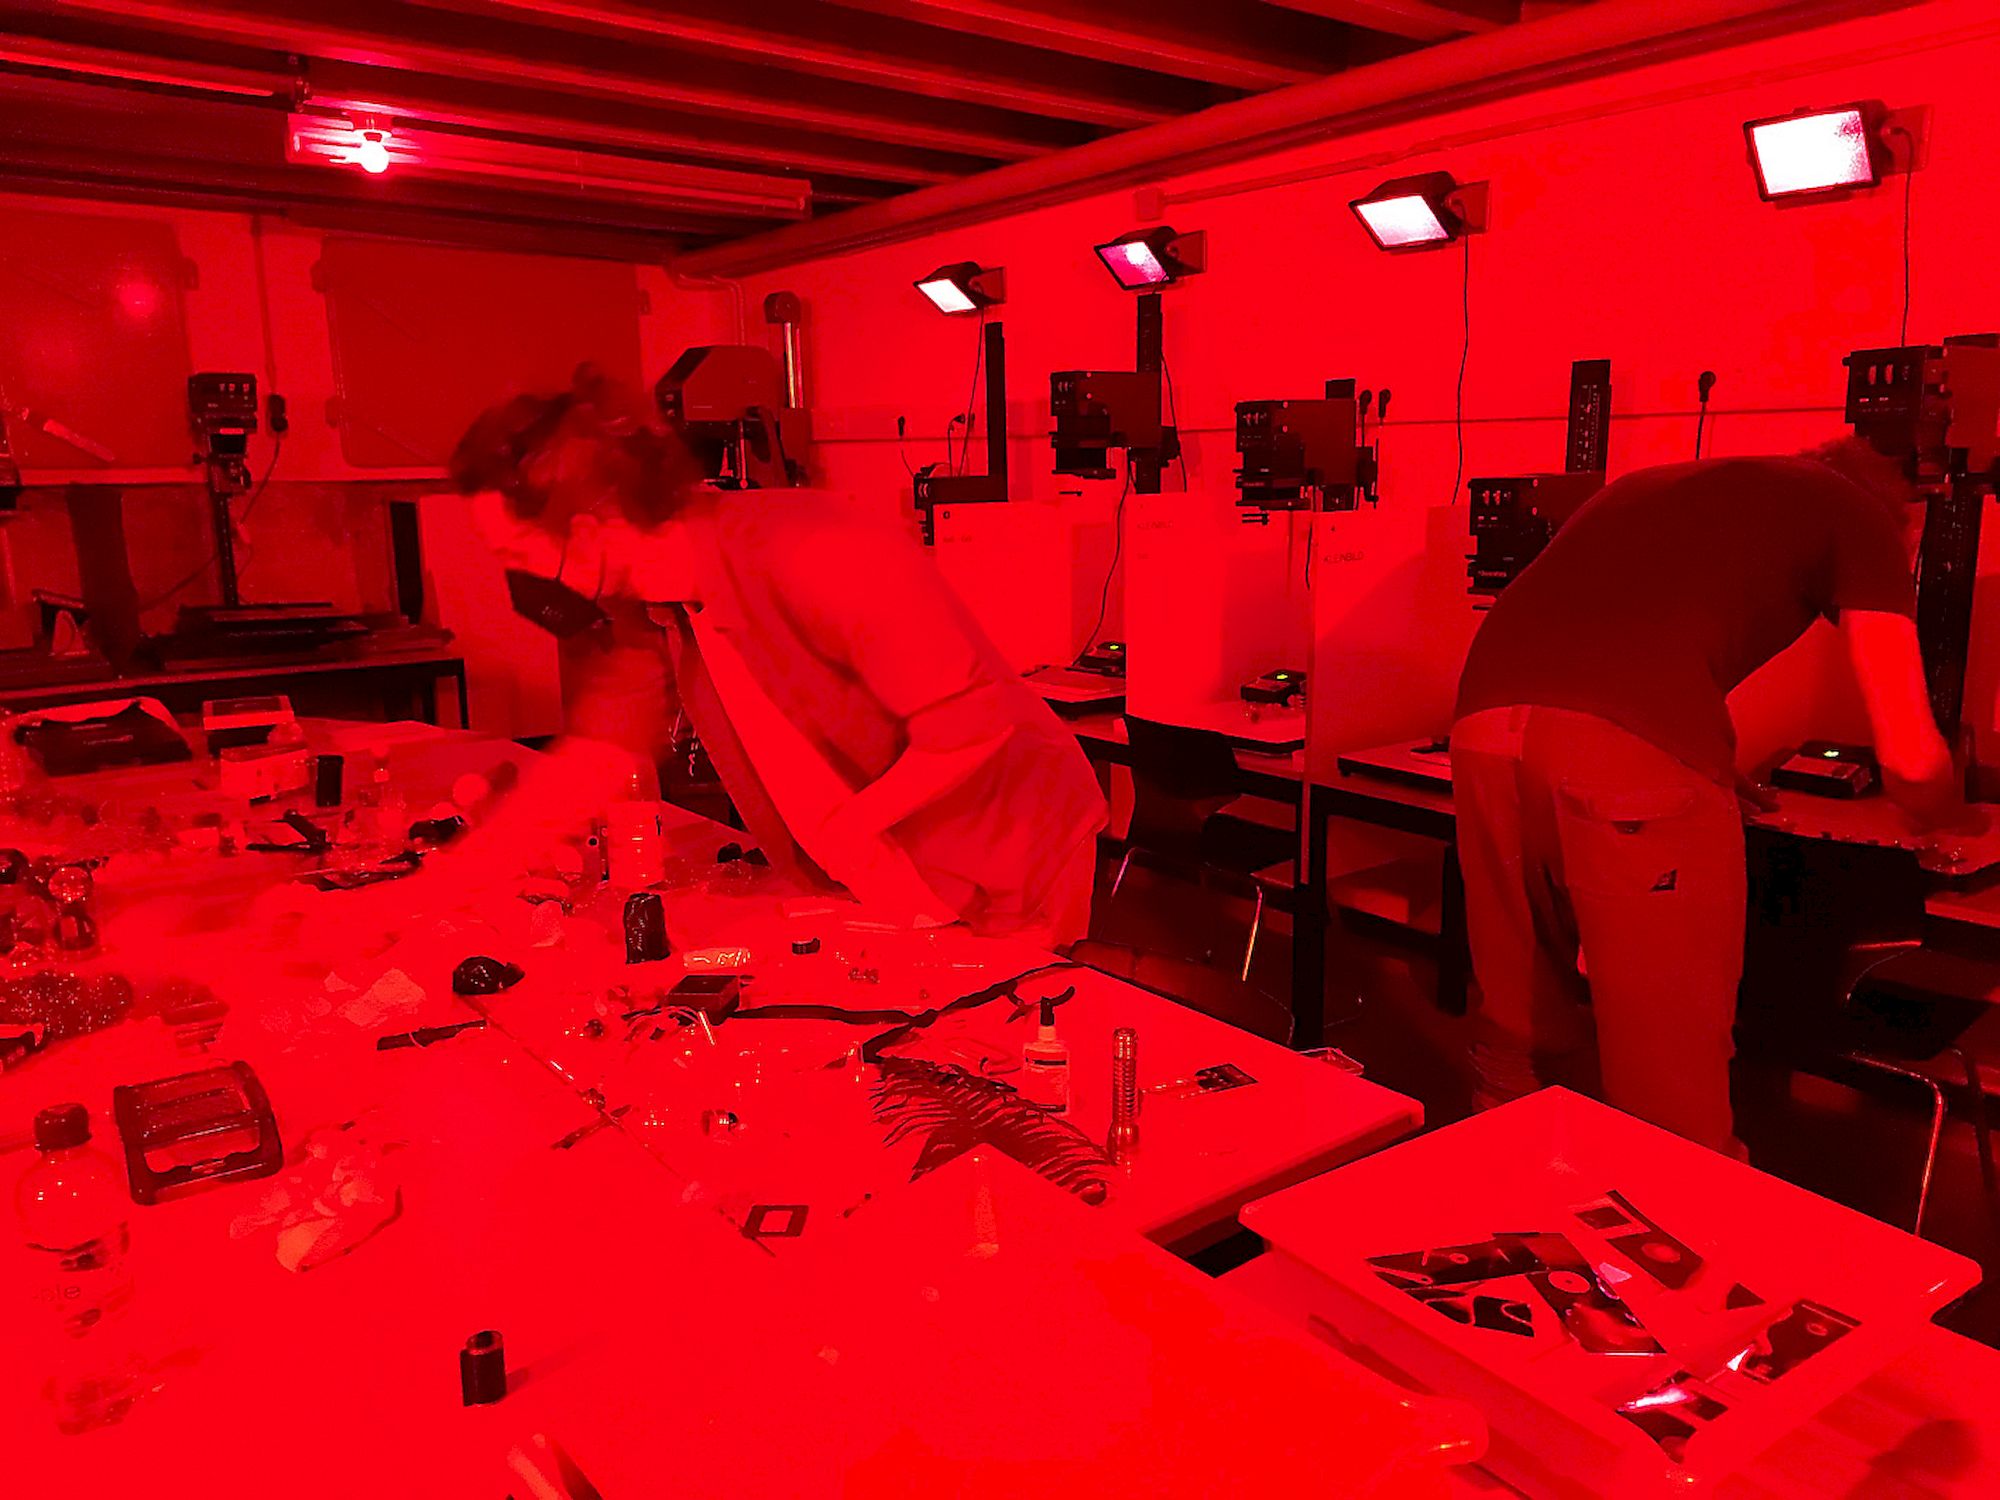 Eine Gruppe von Menschen, die in einer großen Dunkelkammer arbeiten. Alles ist in rotes Licht getaucht. Im Hintergrund sind sechs Arbeitsplätze mit Vergrößerern zu erkennen.